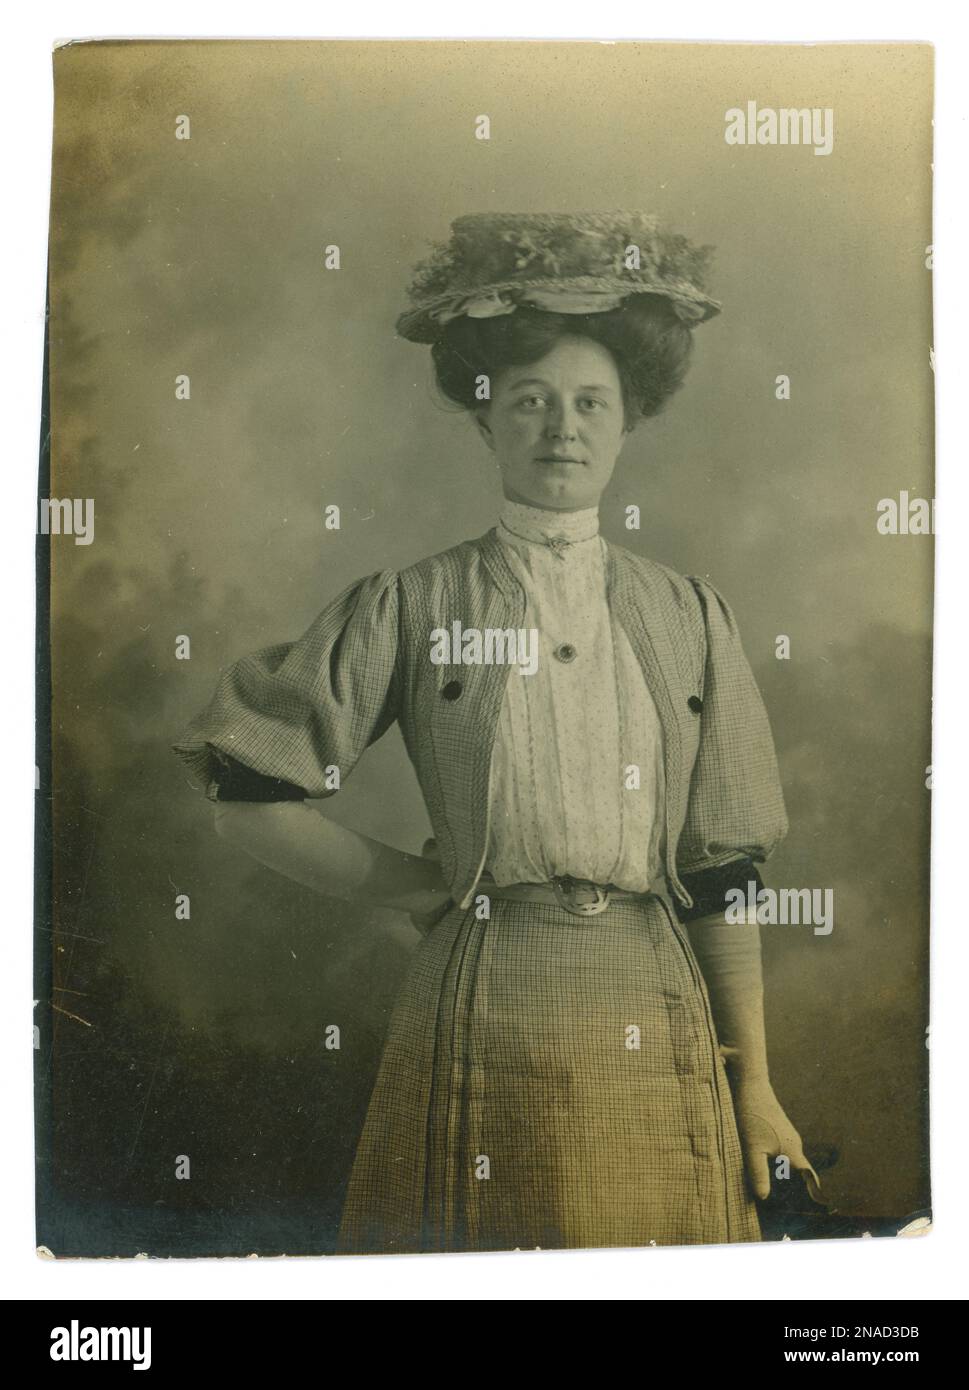 Originales edwardianisches Foto einer hübschen Arbeiterfrau namens Amy. Vielleicht war sie das Dienstmädchen einer Dame. Sie trägt einen Strohhut, eine große Frisur, eine Brosche im Wishbone-Stil, weiße Handschuhe, einen Gürtel um eine sehr schleimige Taille, eine feine, plissierte Sommerbluse aus Baumwolle mit kleinen Punkten, einen hohen Ausschnitt, eine Bolero-Jacke mit Ärmeln bis zum Ellbogen und einen passenden Rock. Vom 5. Juni 1907. Stockfoto